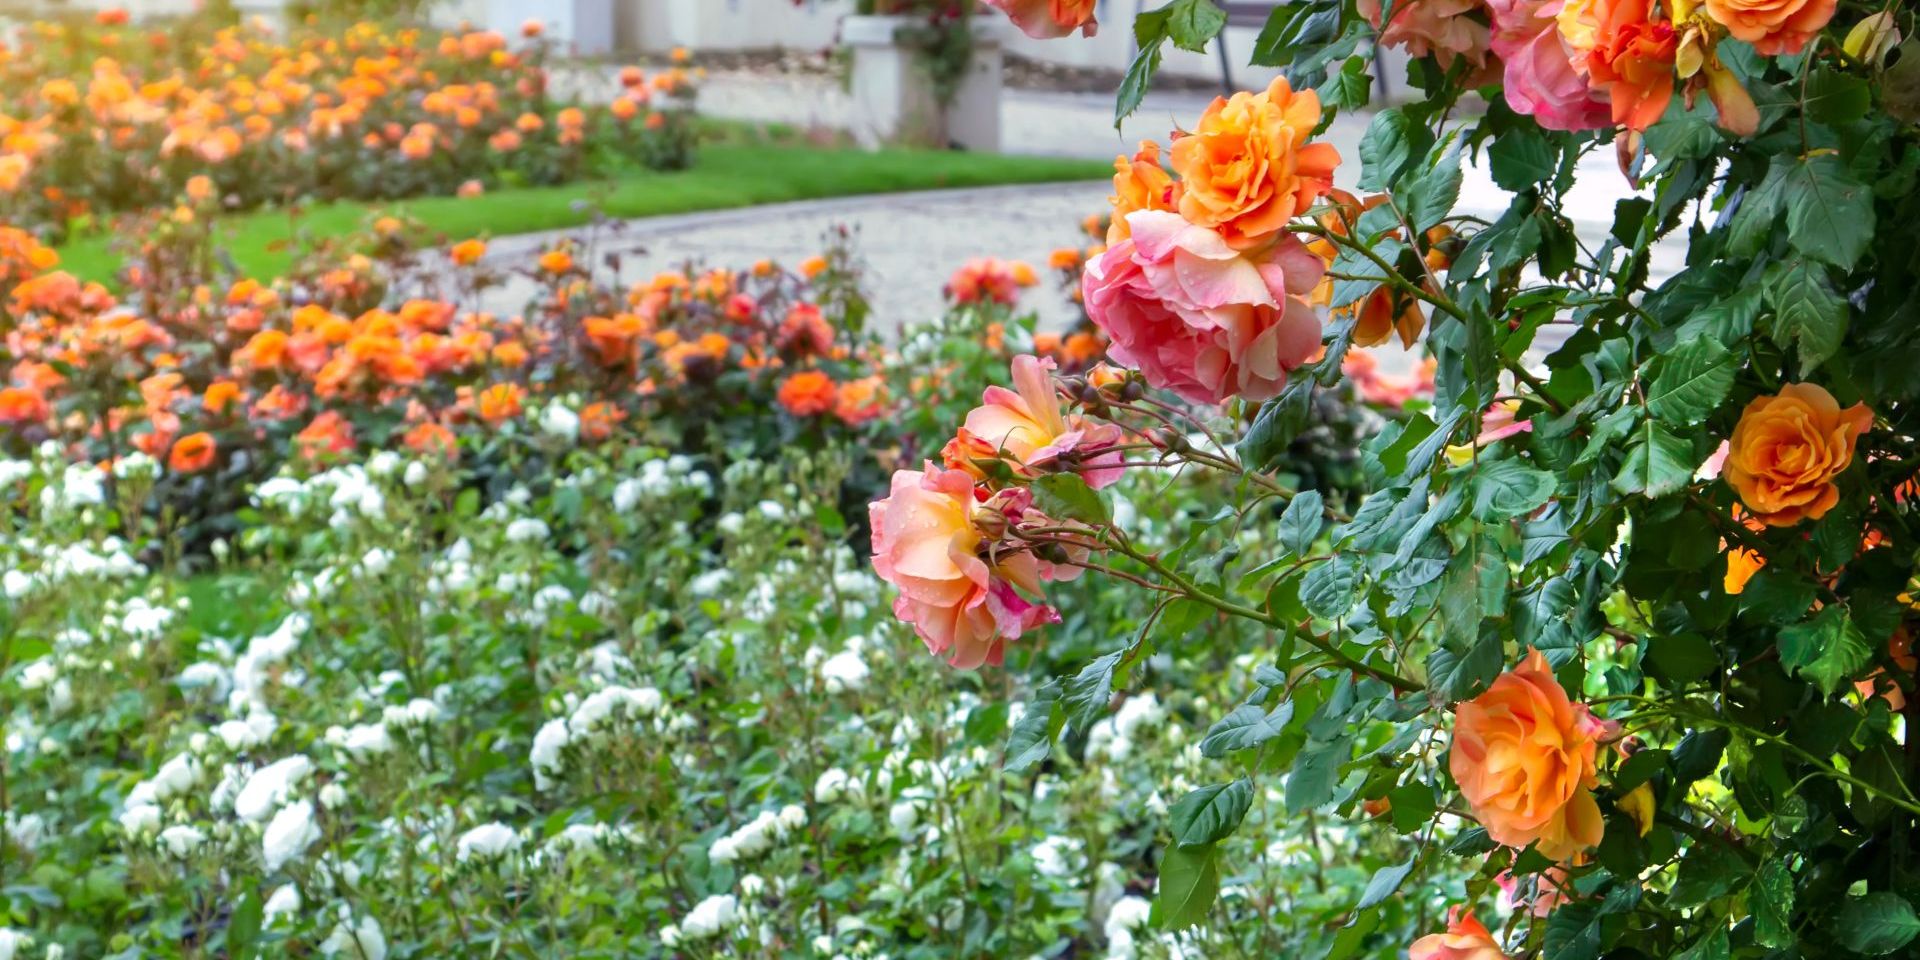 Hogyan legyen illatos és színes virágoskertünk?